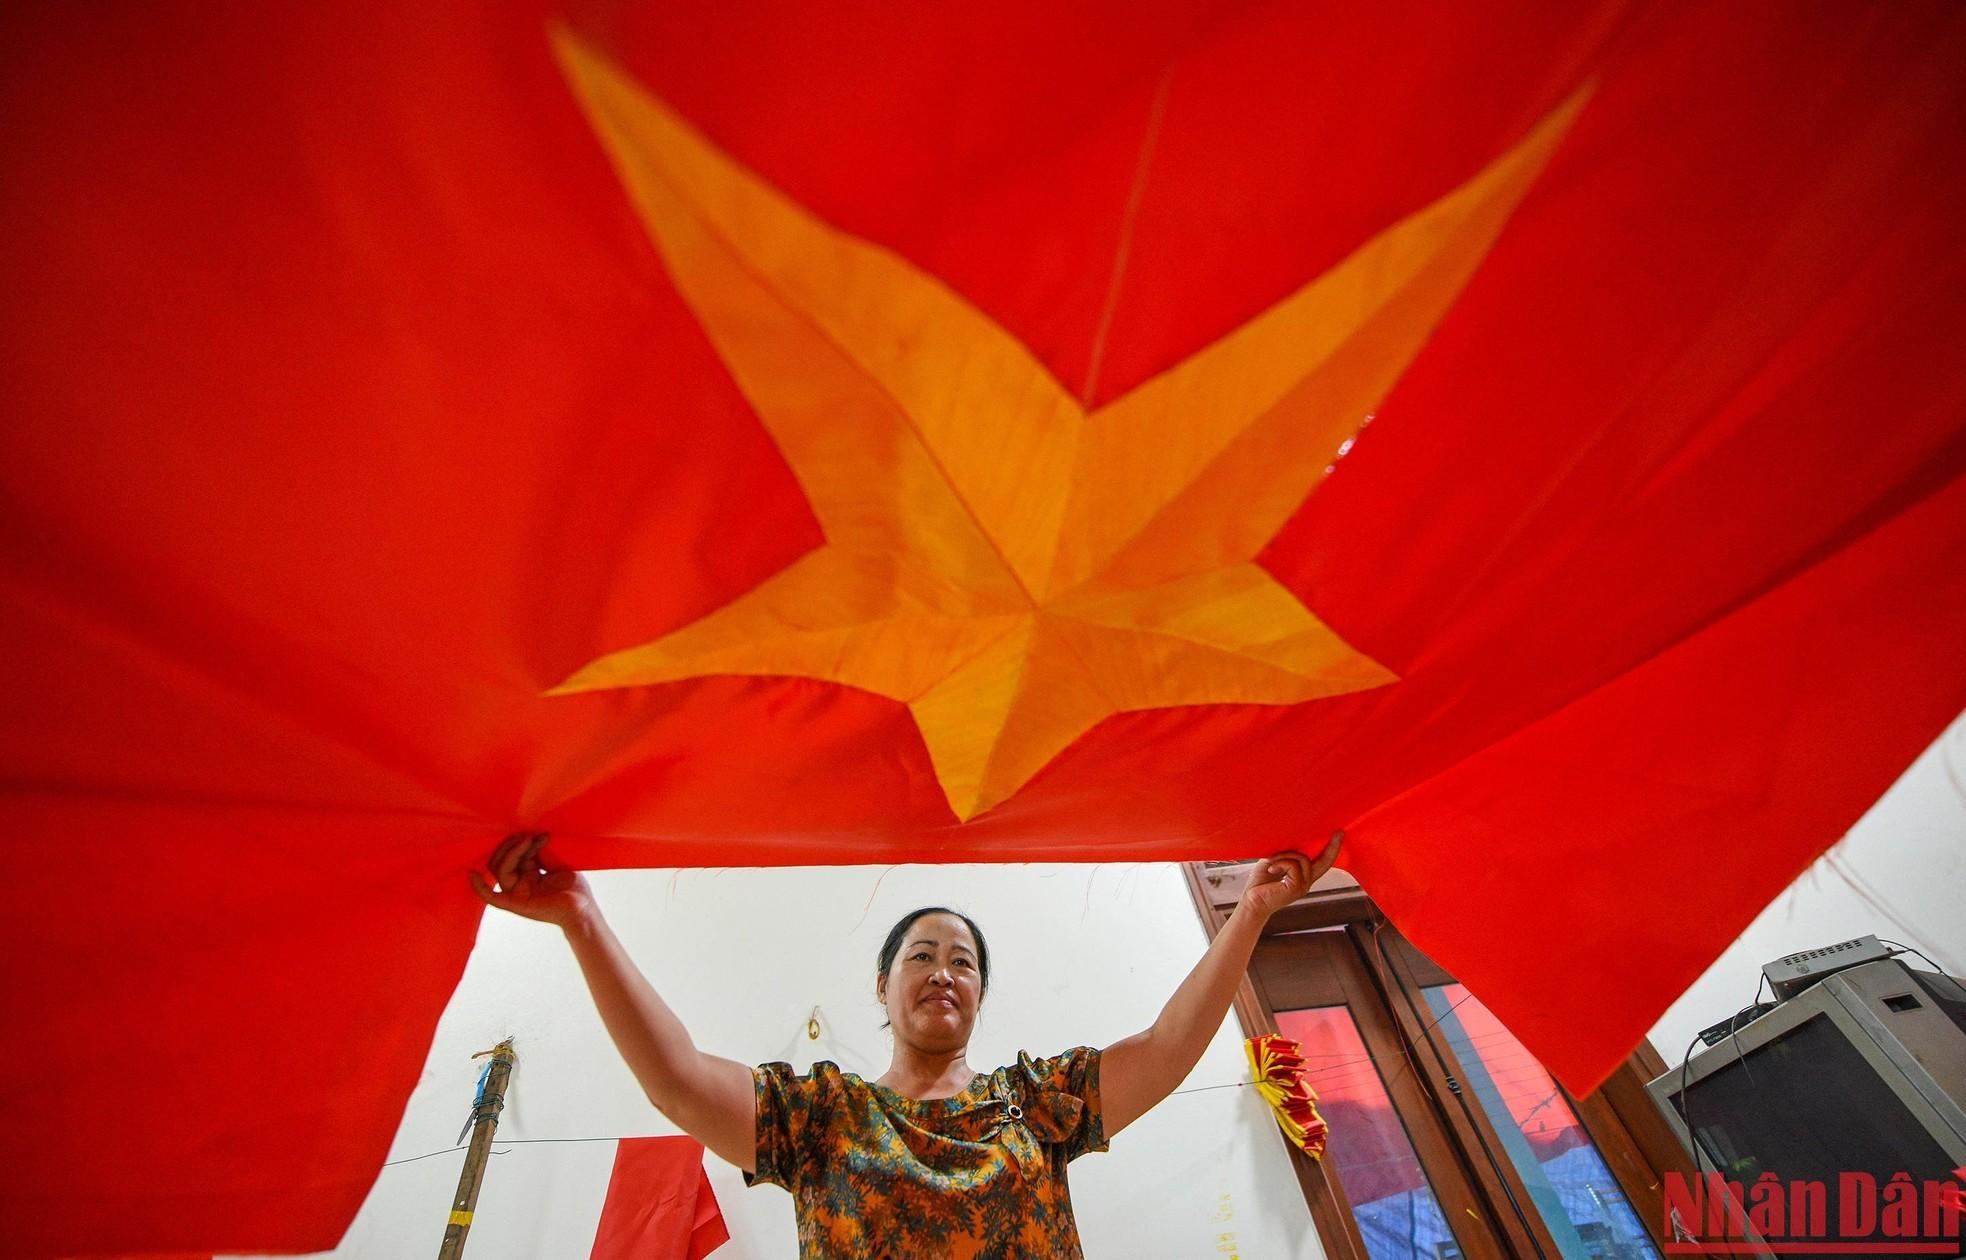 Recorrido por aldea dedicada a confección de bandera nacional de Vietnam